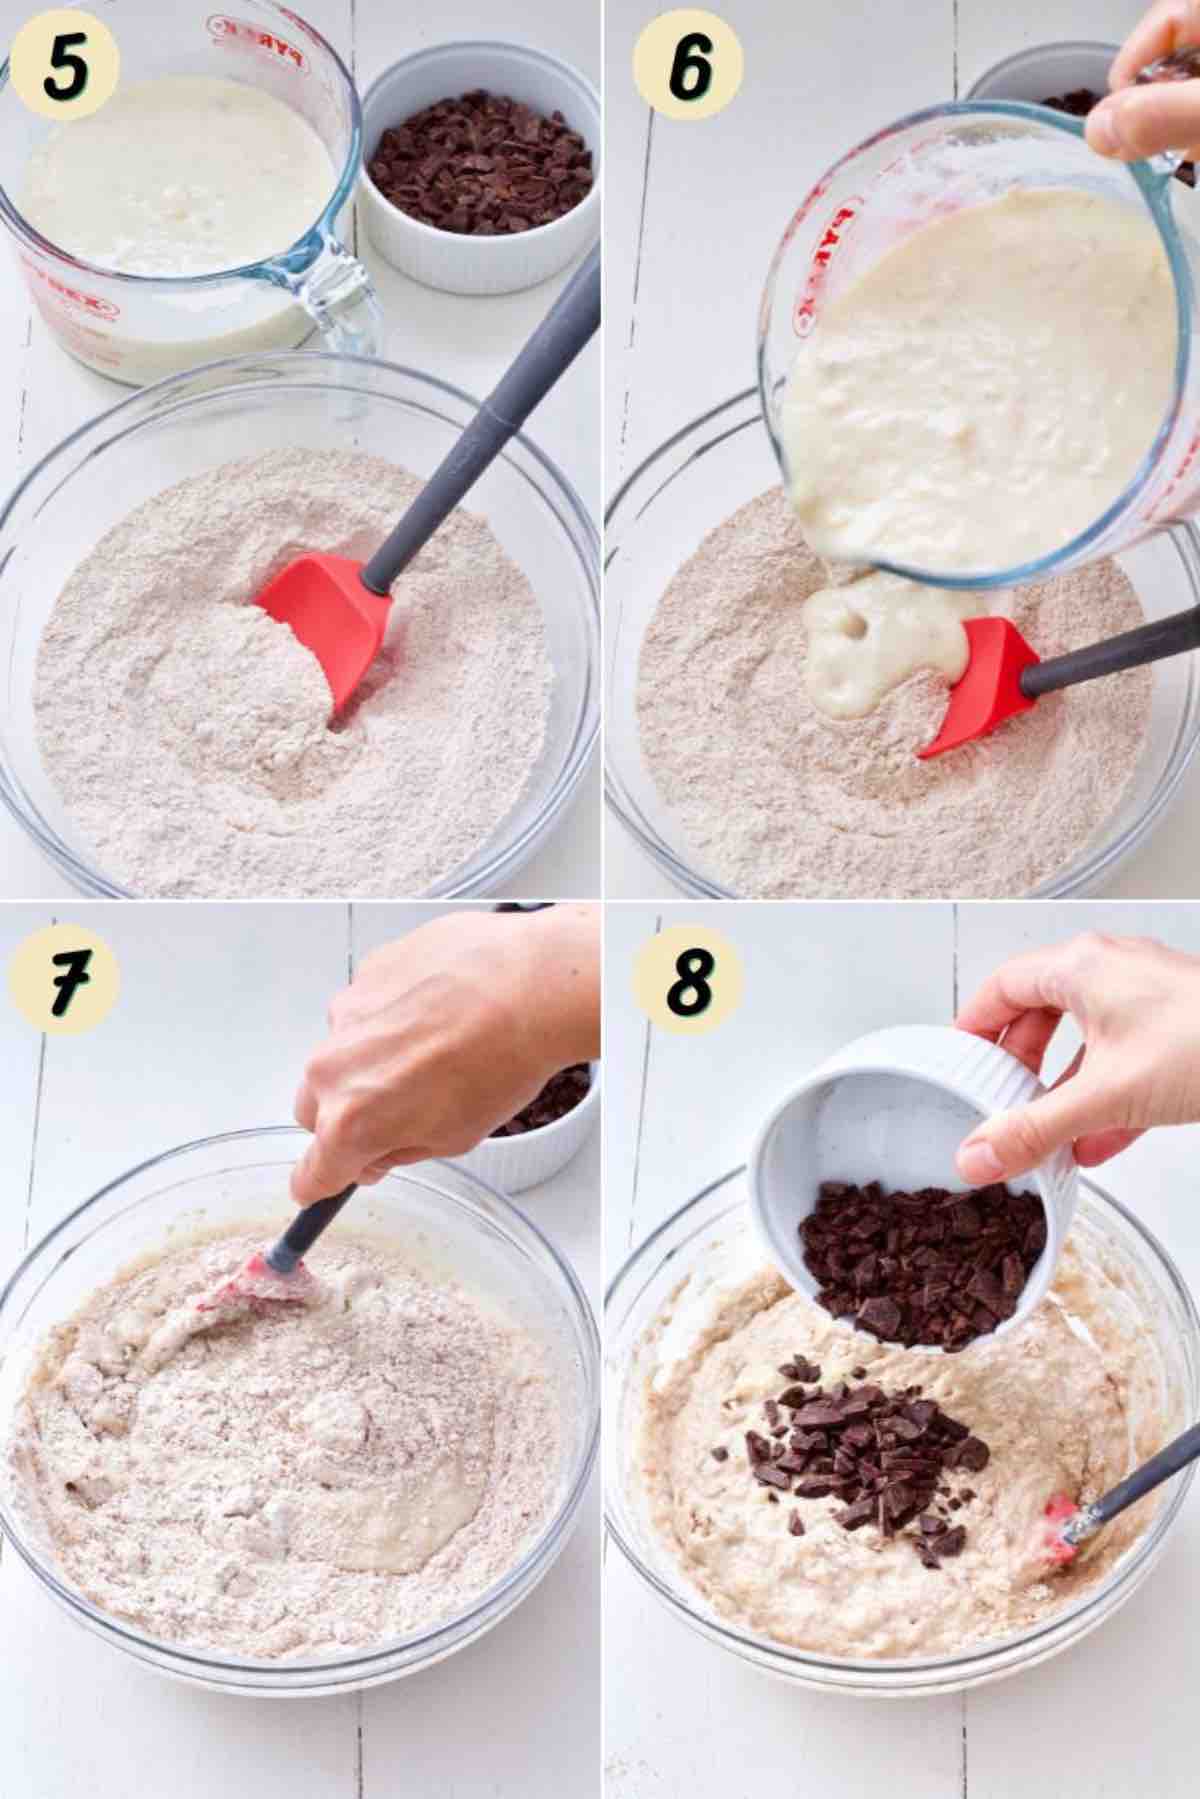 Process of mixing banana muffins batter.